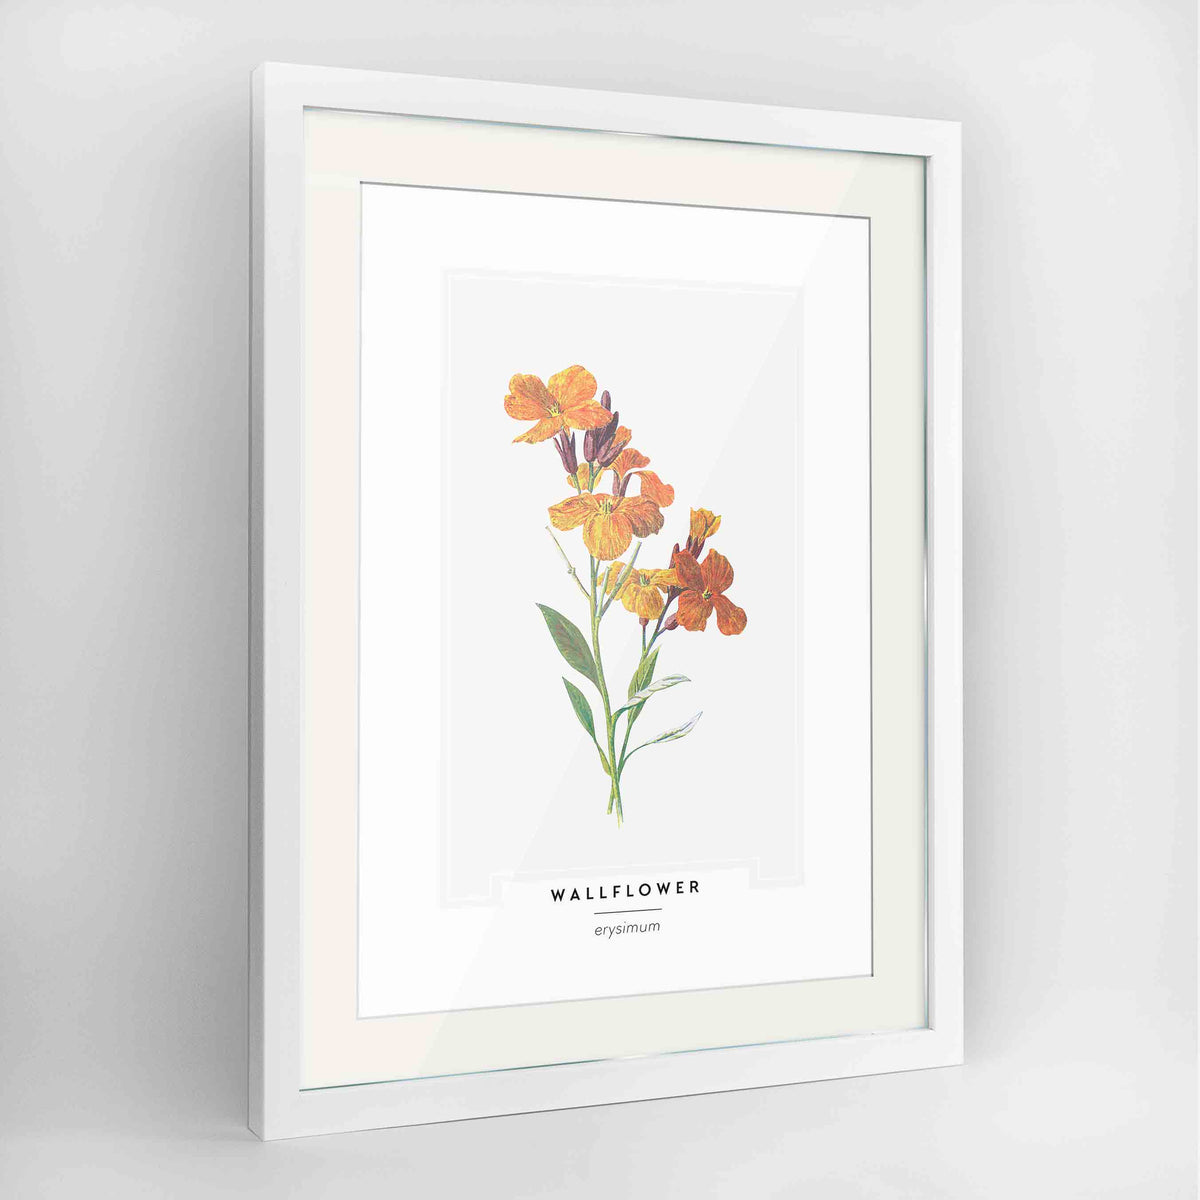 Wallflower Botanical Art Print - Framed